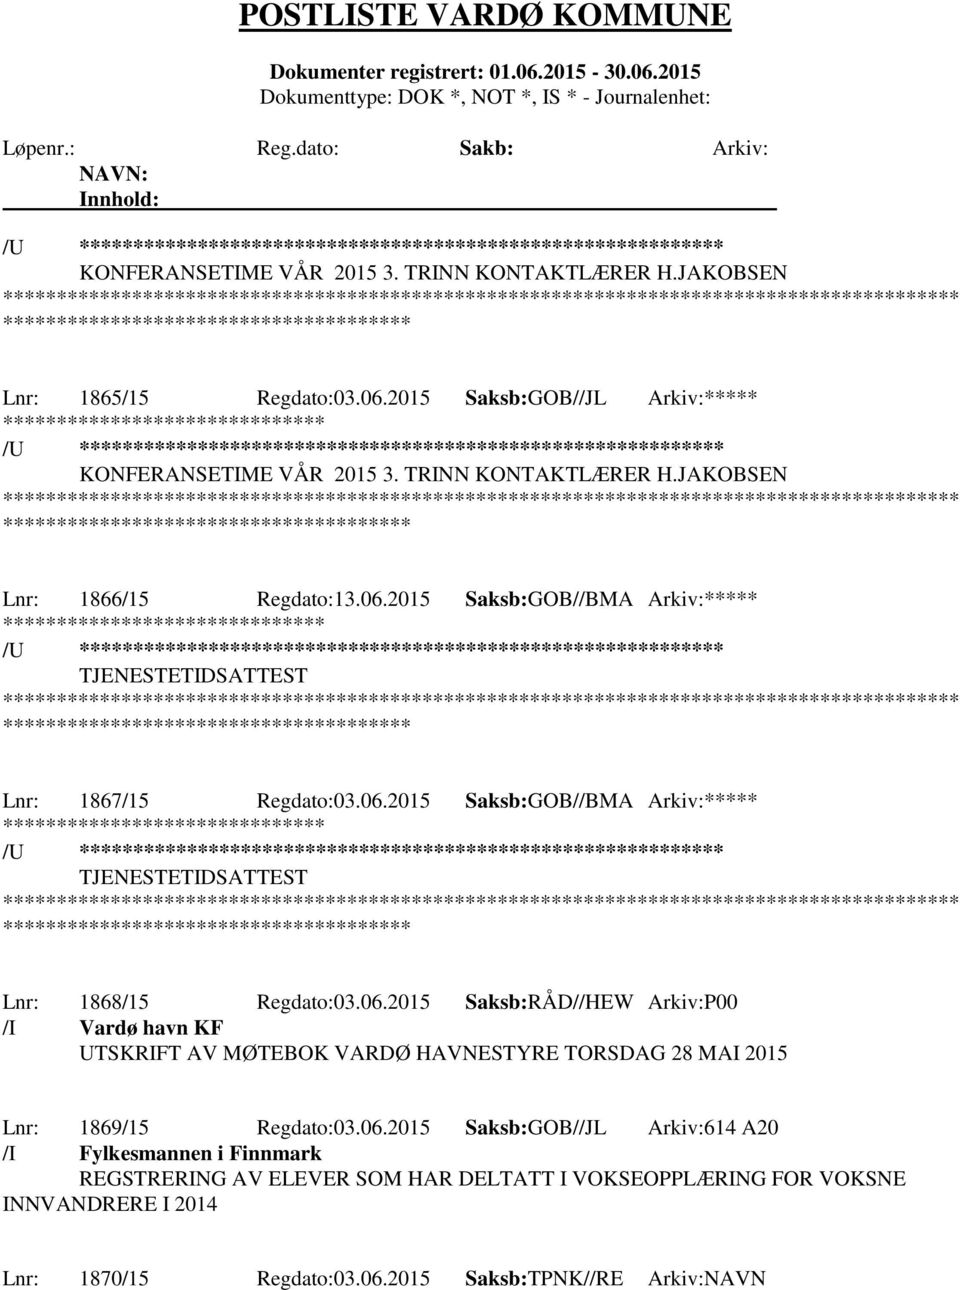 06.2015 Saksb:RÅD//HEW Arkiv:P00 /I Vardø havn KF UTSKRIFT AV MØTEBOK VARDØ HAVNESTYRE TORSDAG 28 MAI 2015 Lnr: 1869/15 Regdato:03.06.2015 Saksb:GOB//JL Arkiv:614 A20 /I Fylkesmannen i Finnmark REGSTRERING AV ELEVER SOM HAR DELTATT I VOKSEOPPLÆRING FOR VOKSNE INNVANDRERE I 2014 Lnr: 1870/15 Regdato:03.